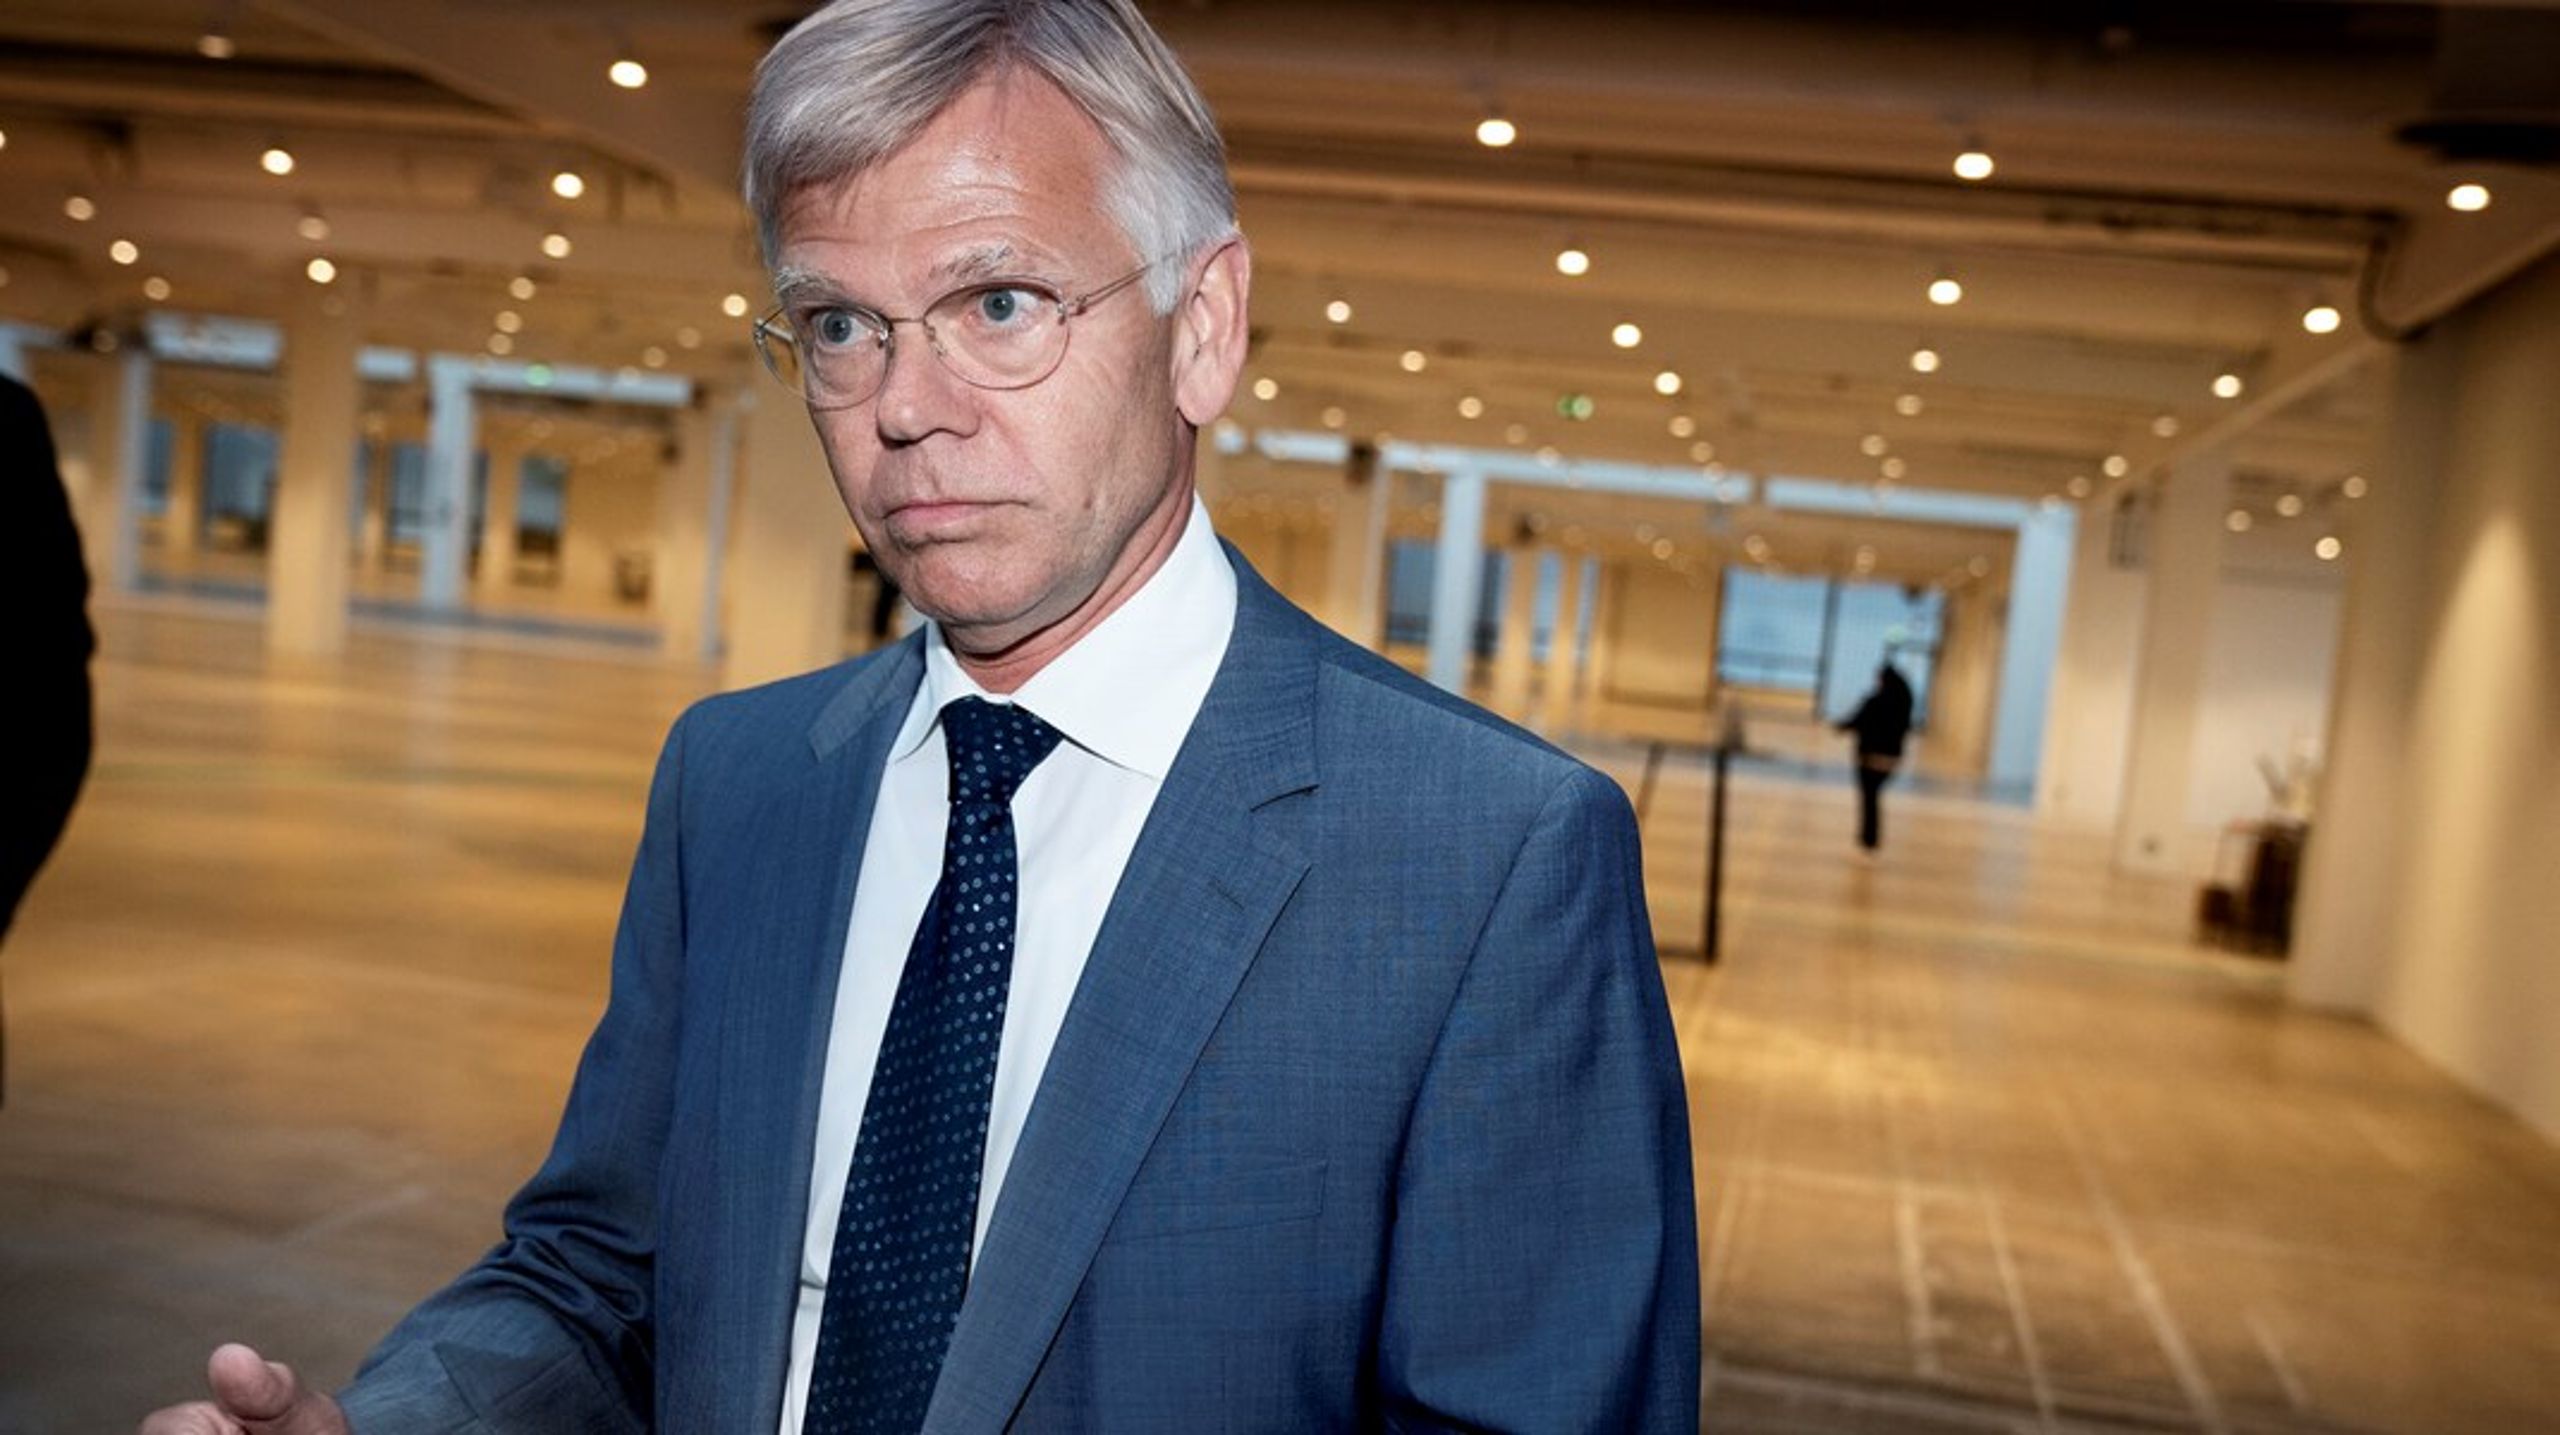 Karsten Dybvad var departementschef i Statsministeriet fra 2005 til 2010. Han har også været administrerende direktør i DI fra 2010 til 2018.